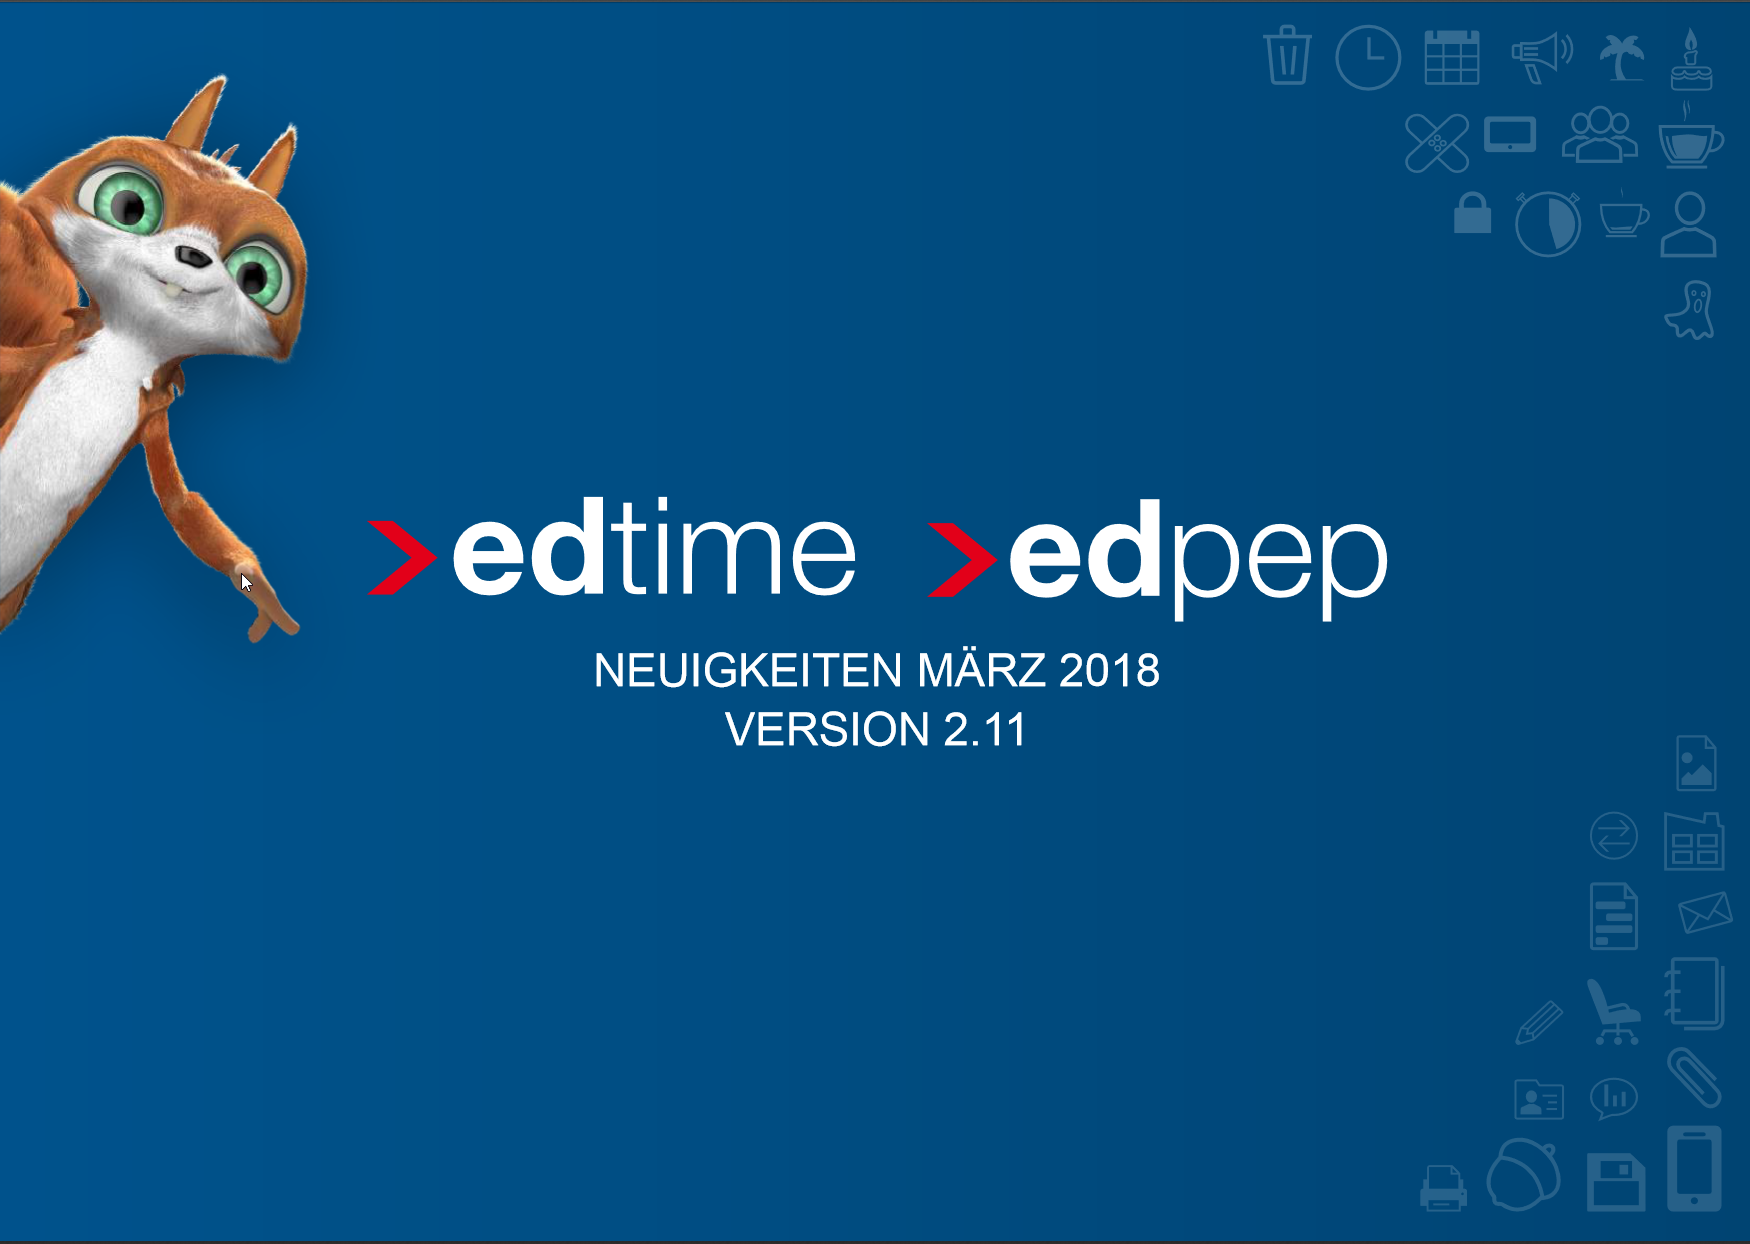 Neue Version edtime/edpep online